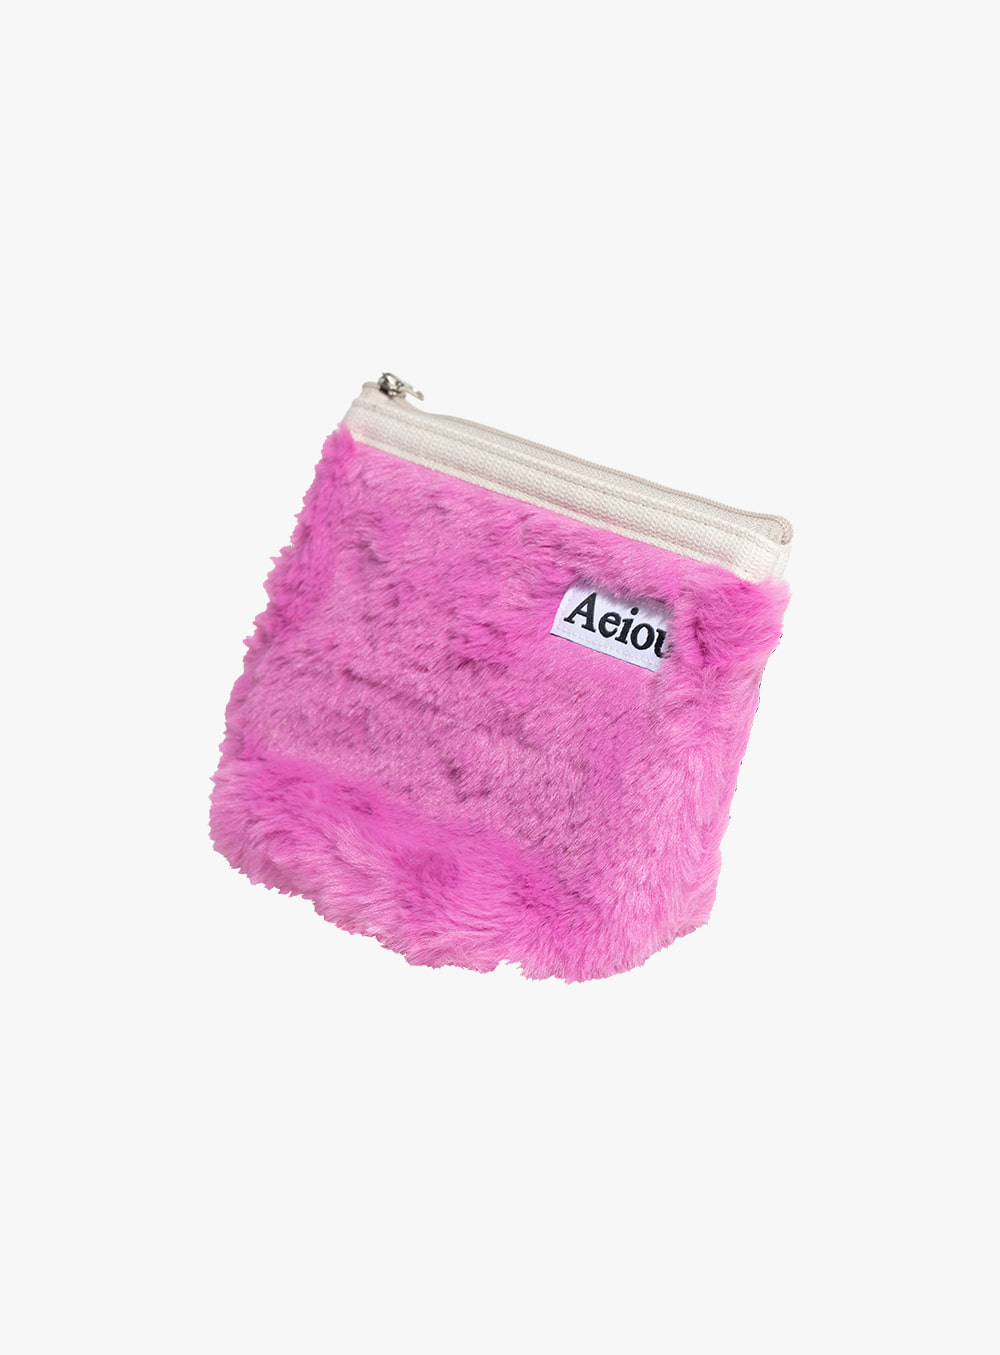 아에이오우 - Basic Pouch (M size) Pink Mountain Berry Fur